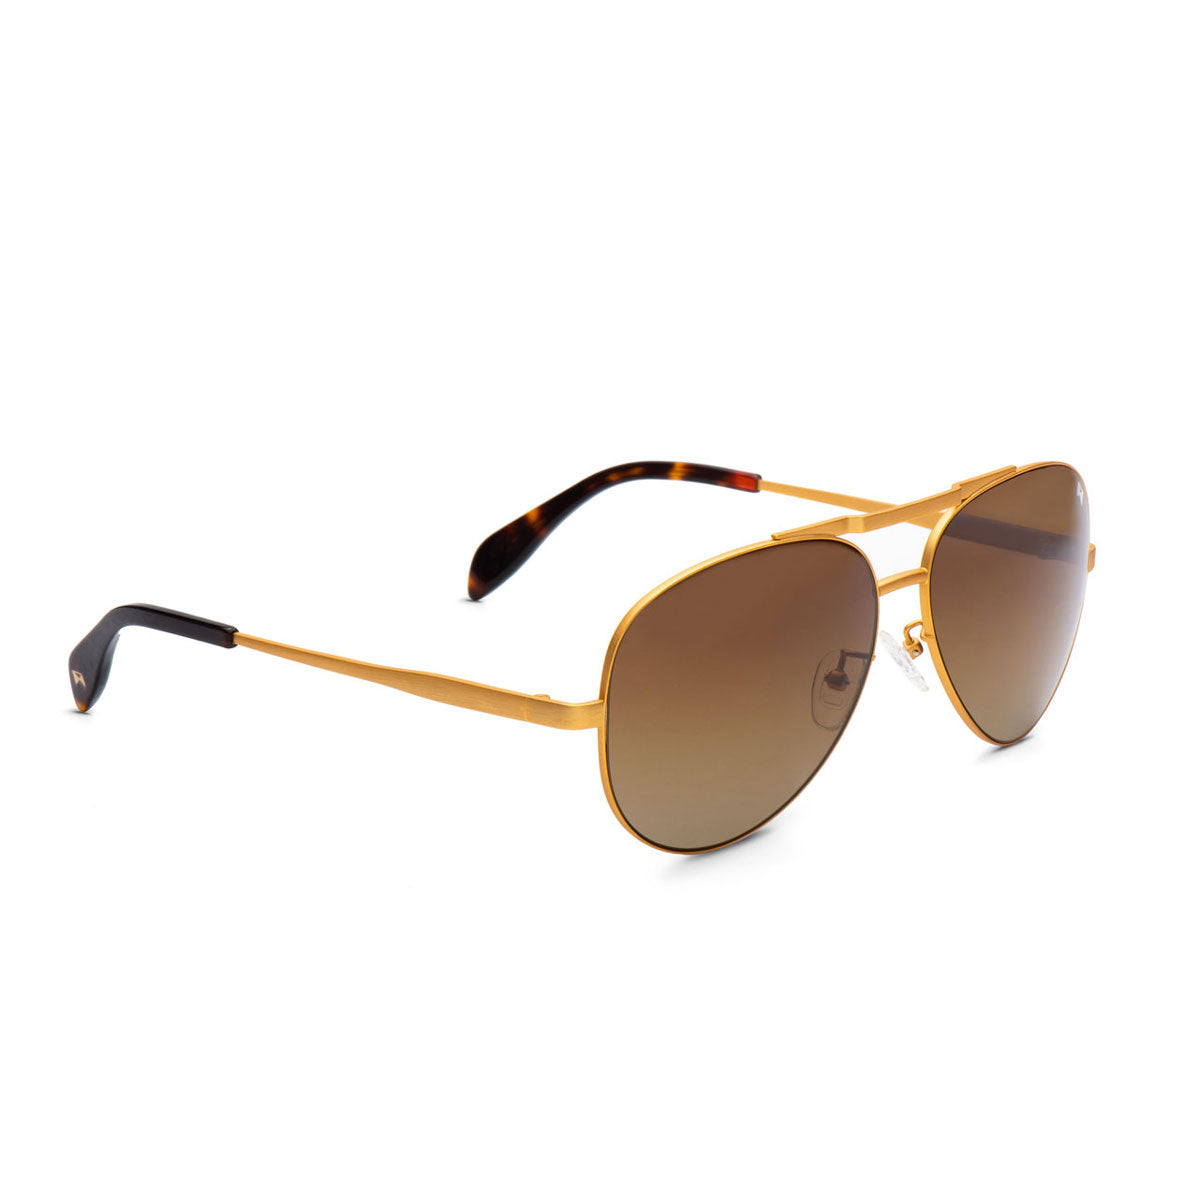 Sunglasses, The Hughes Polarized Lens Titanium Metal Sunglasses, William Painter, Gold/Brown, Adult, unisex